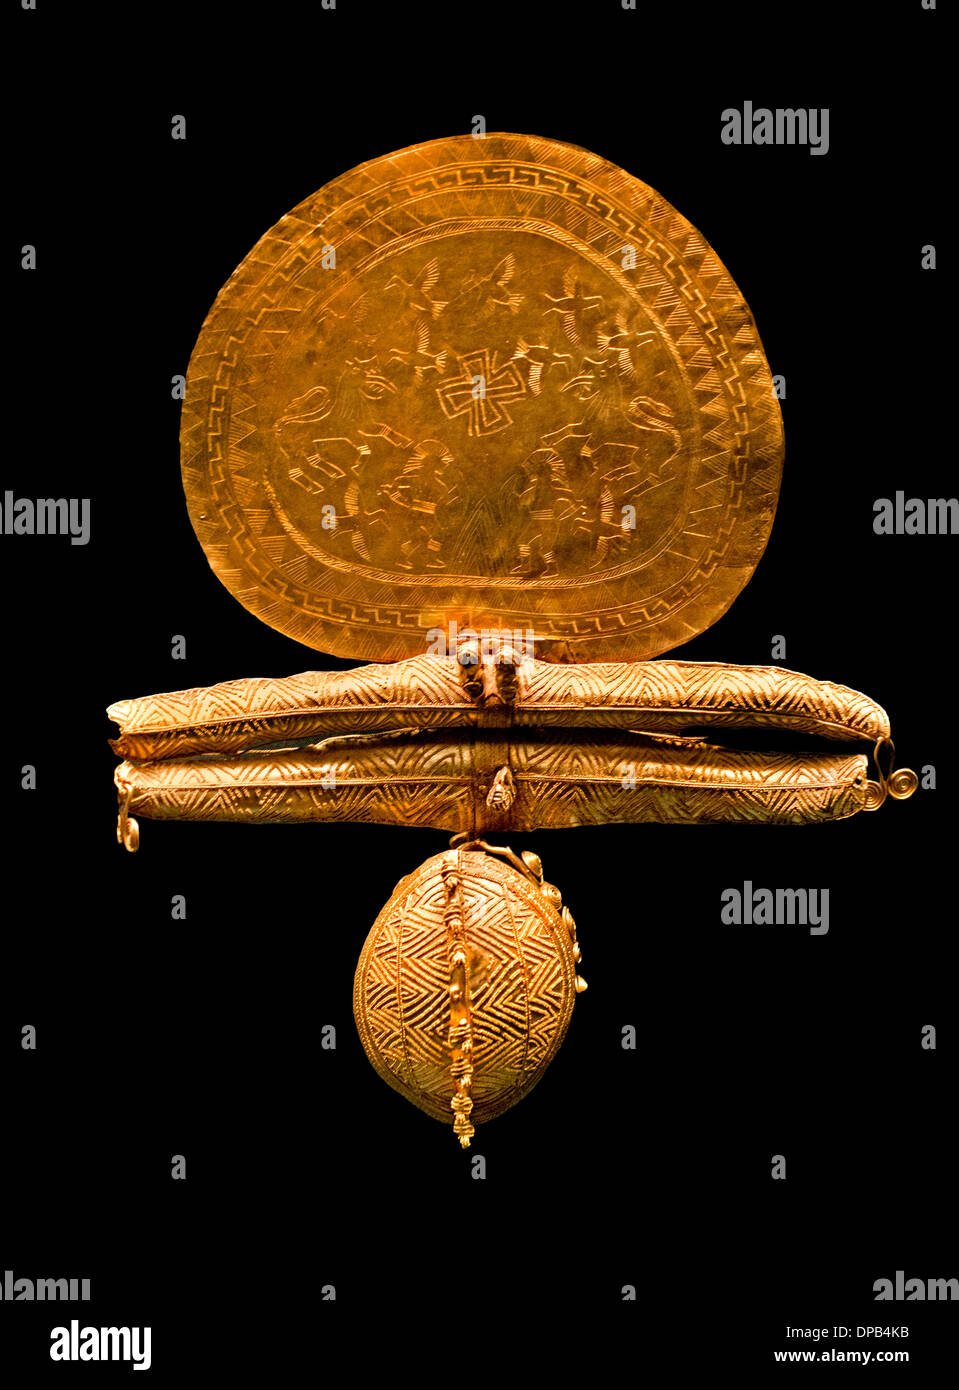 Magnifica spilla incisa gioielli - disco di guerrieri in un duello Lions e uccelli etrusca gioielli in oro 7 secolo A.C. Etruria Italia Foto Stock